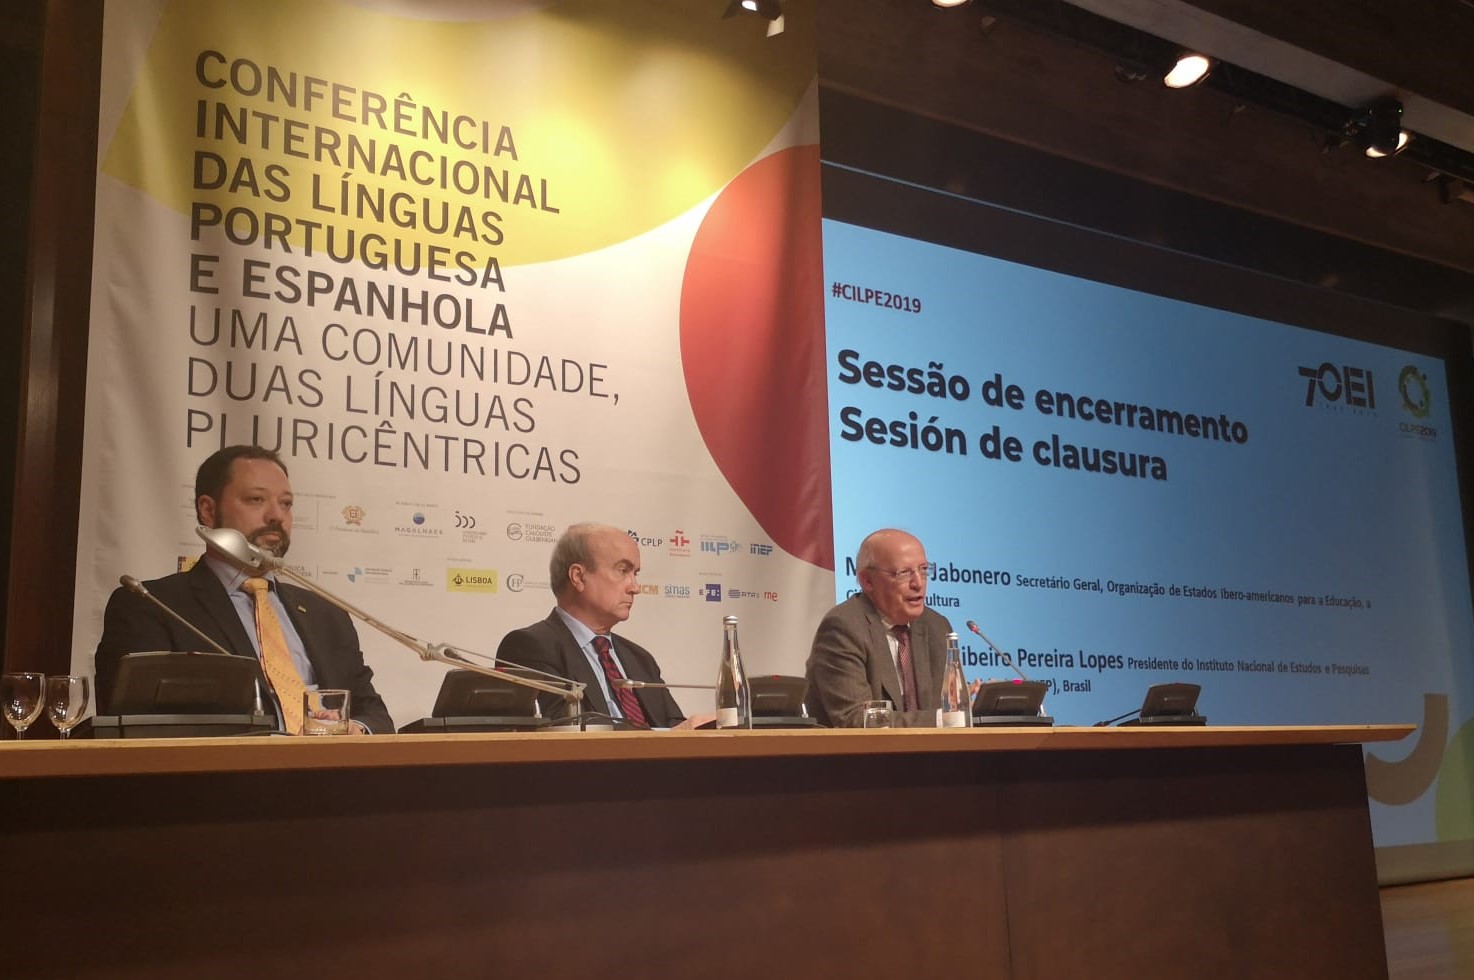 CILPE2019: Português e espanhol estiveram em diálogo em Lisboa